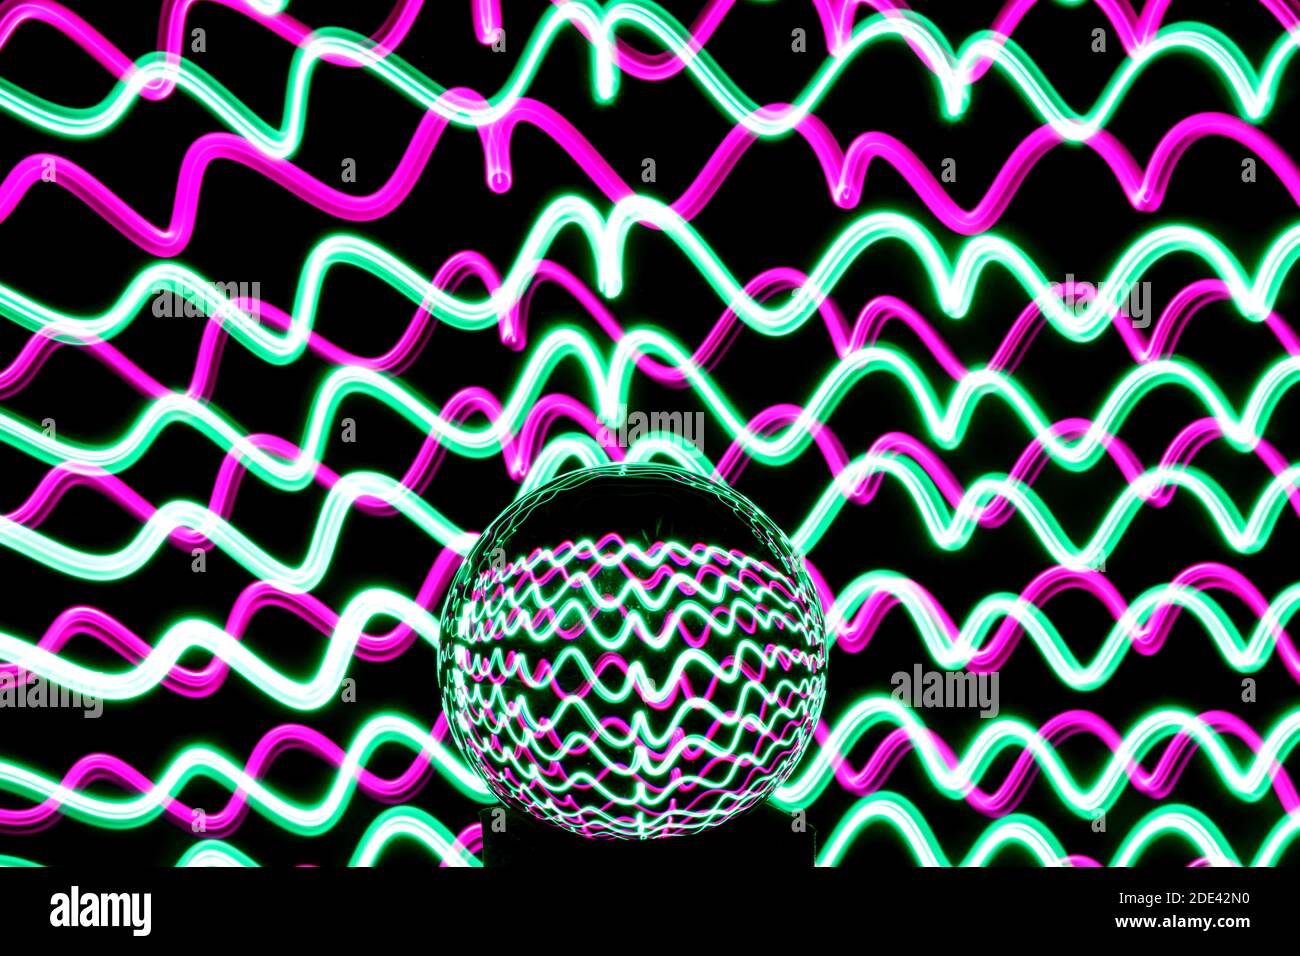 Langzeitaufnahme von Neon Multi Color in einem abstrakten Wirbel Muster mit reflektierenden Glaskugel. Lichtmalerei Fotografie. Stockfoto